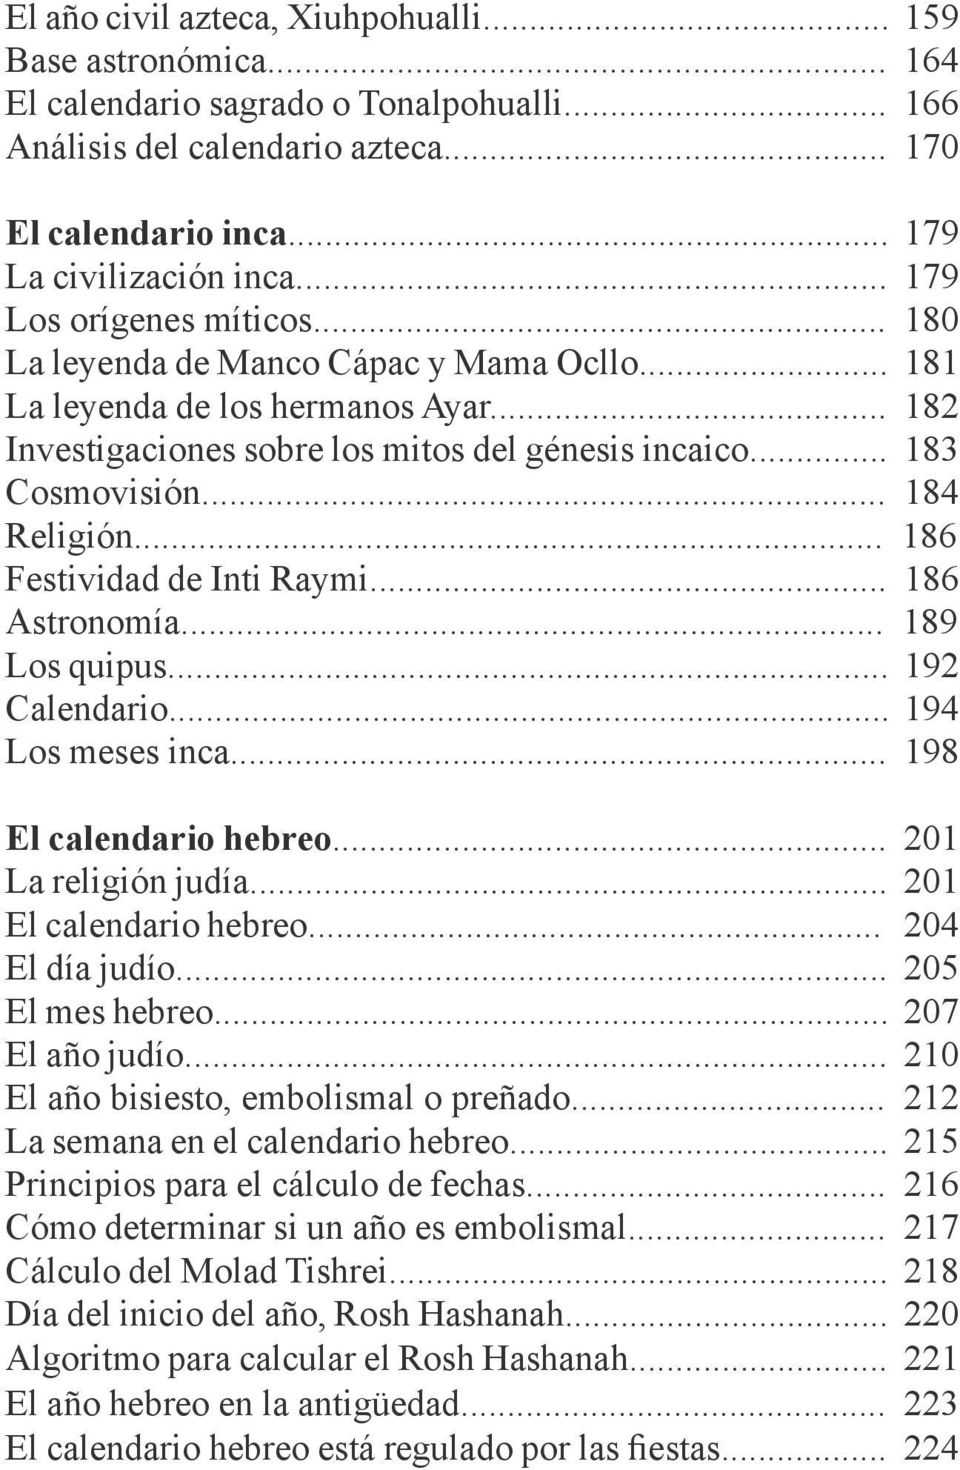 .. 184 Religión... 186 Festividad de Inti Raymi... 186 Astronomía... 189 Los quipus... 192 Calendario... 194 Los meses inca... 198 El calendario hebreo... 201 La religión judía.